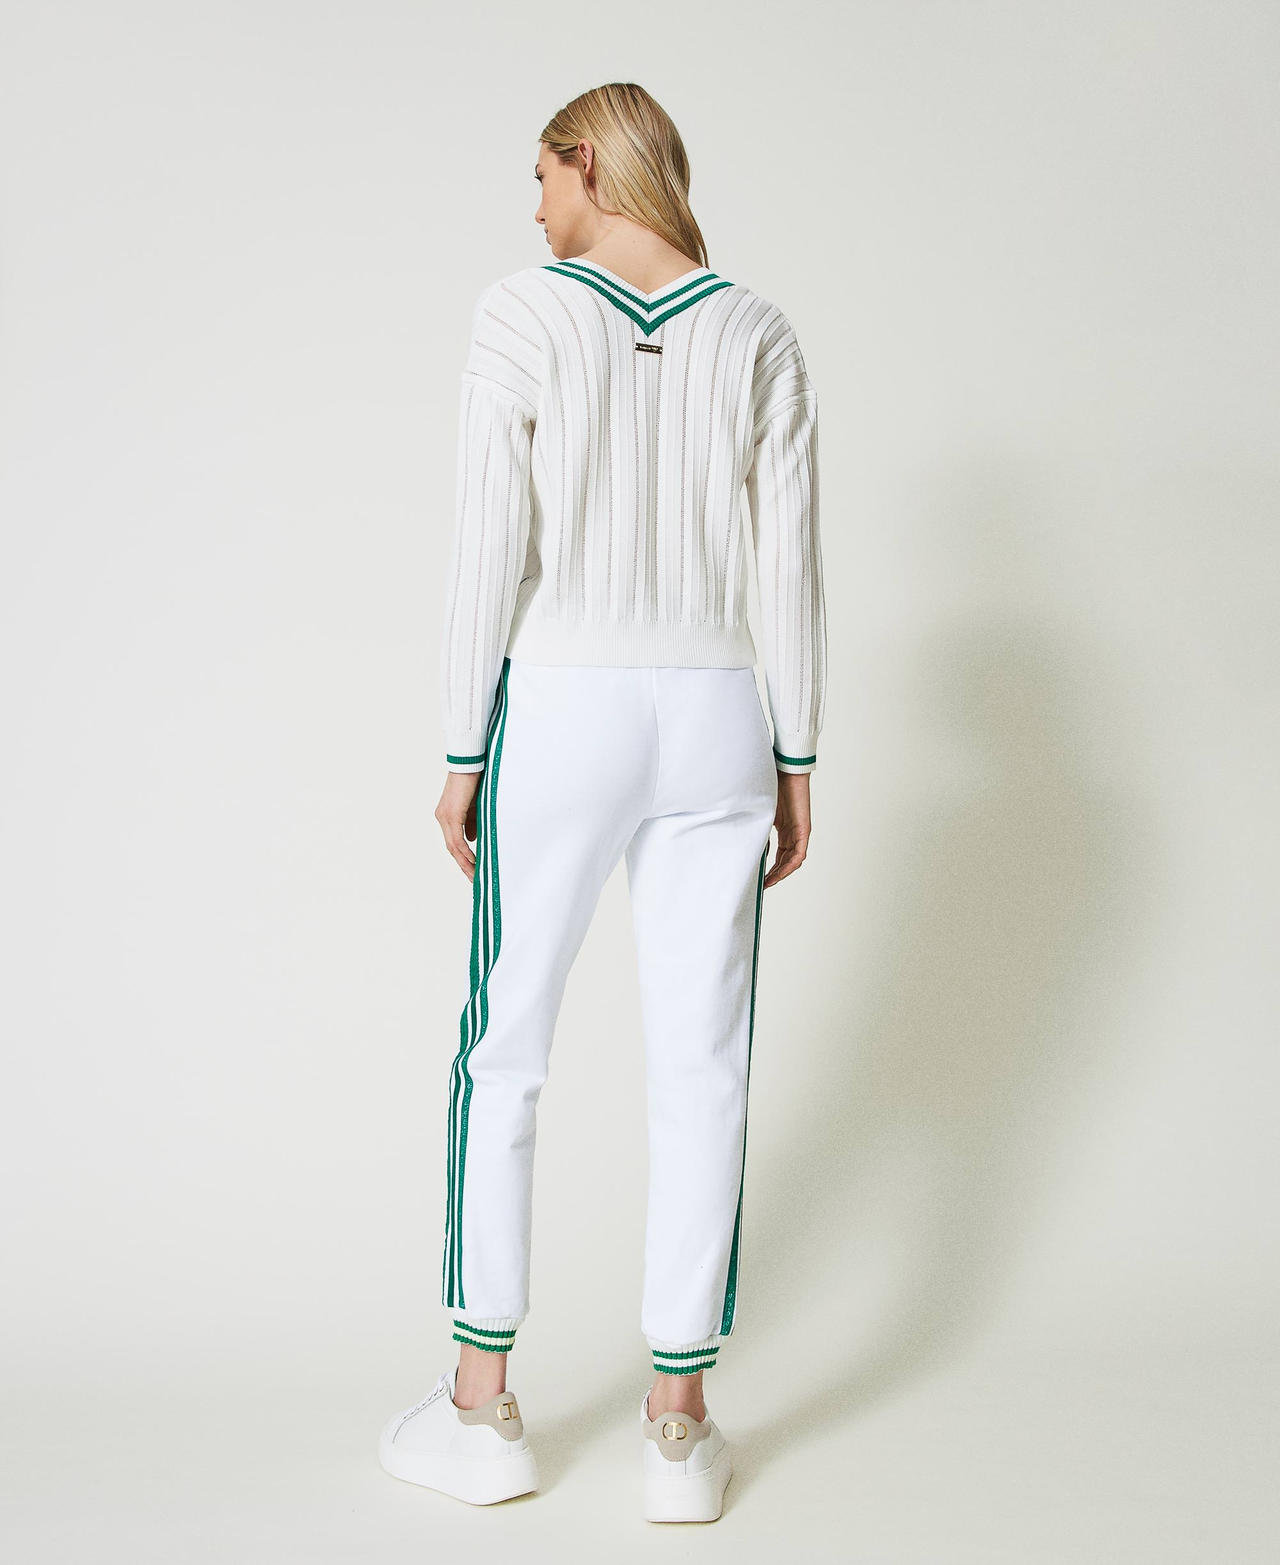 Pantalon de jogging en molleton avec rayures Bicolore Blanc Cassé/Vert « Alpine Green » Femme 241LL2QJJ-03